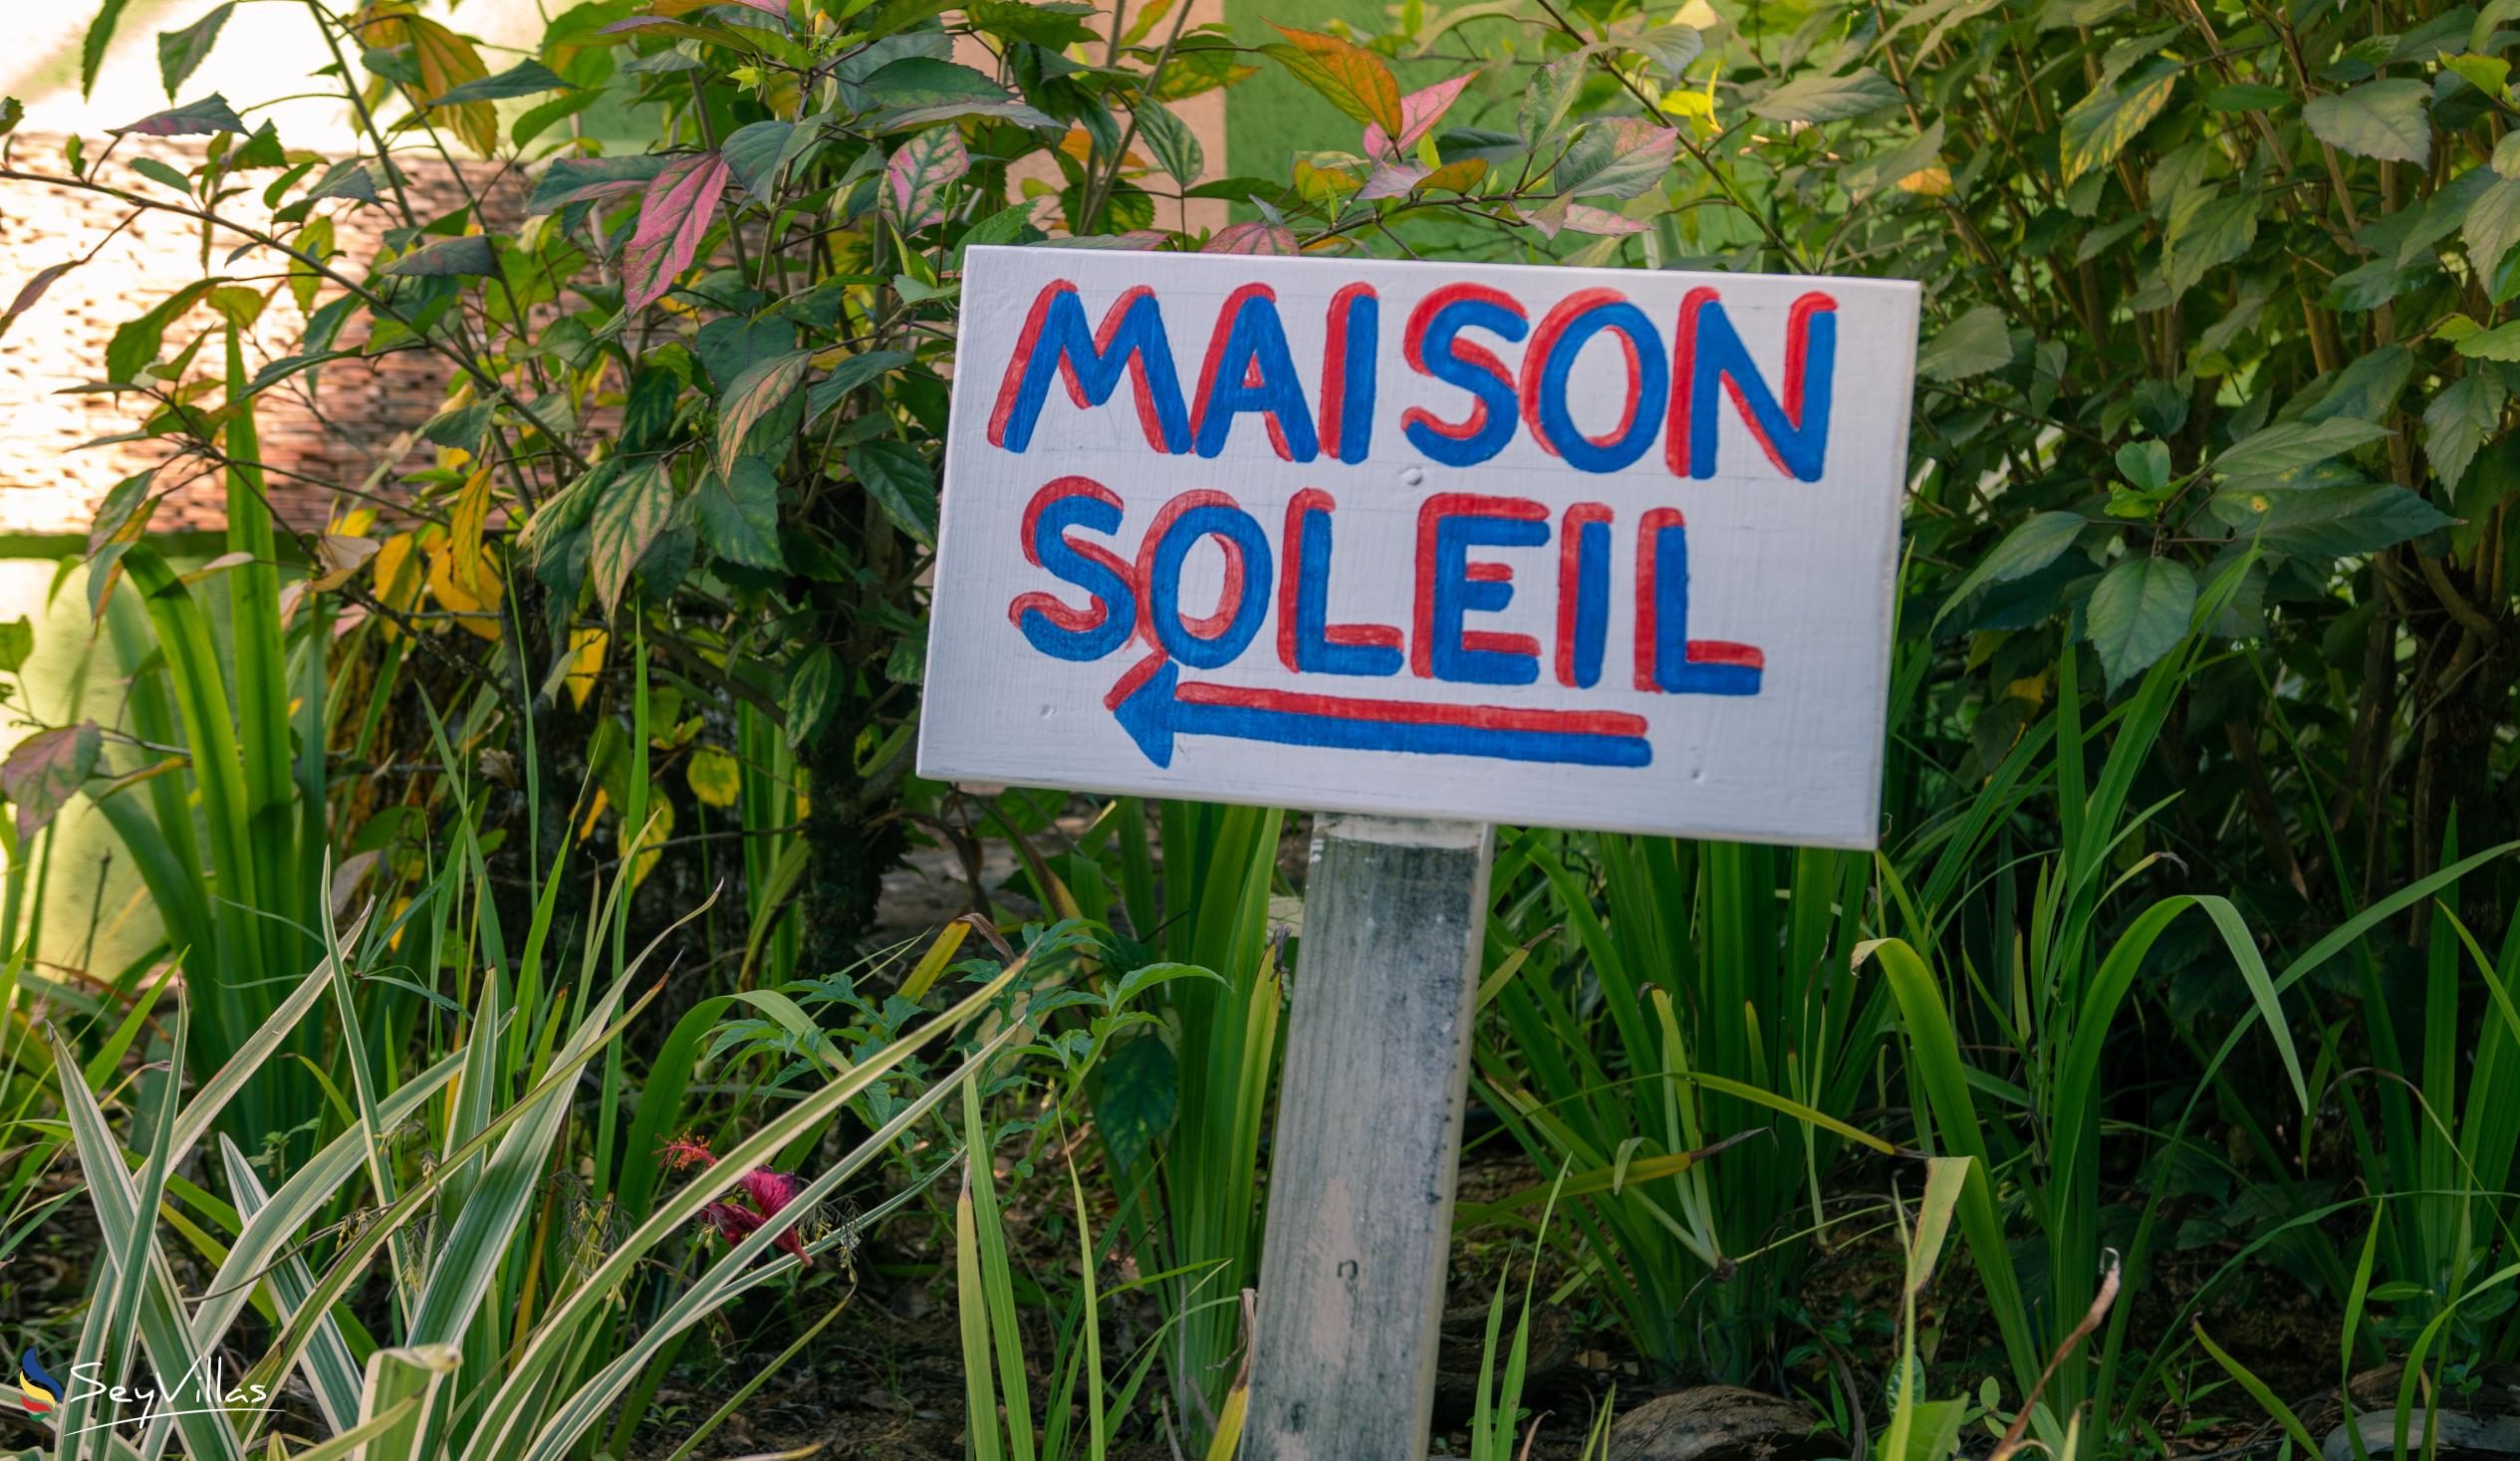 Photo 7: Maison Soleil - Outdoor area - Mahé (Seychelles)